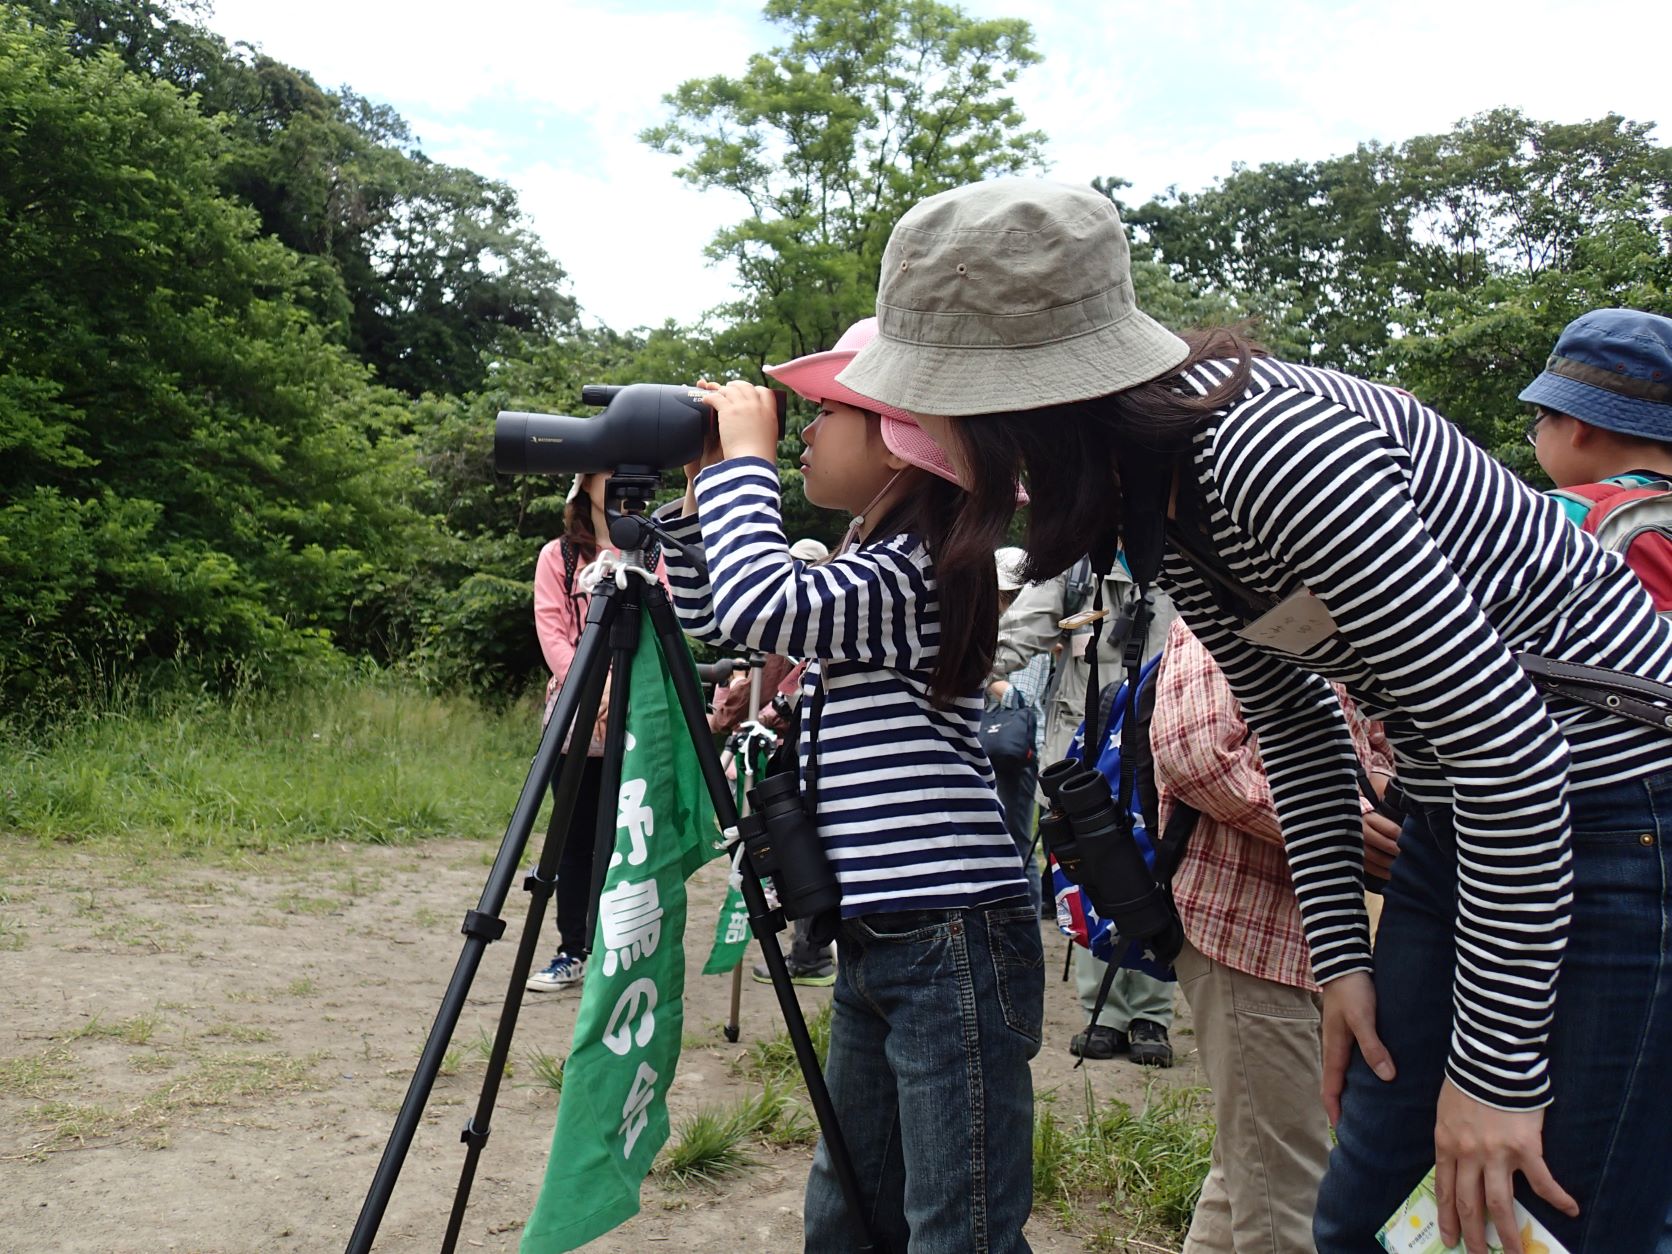   野鳥の名前にこだわらない 「日本野鳥の会」尾崎さんに聞く、親子で始める野鳥観察